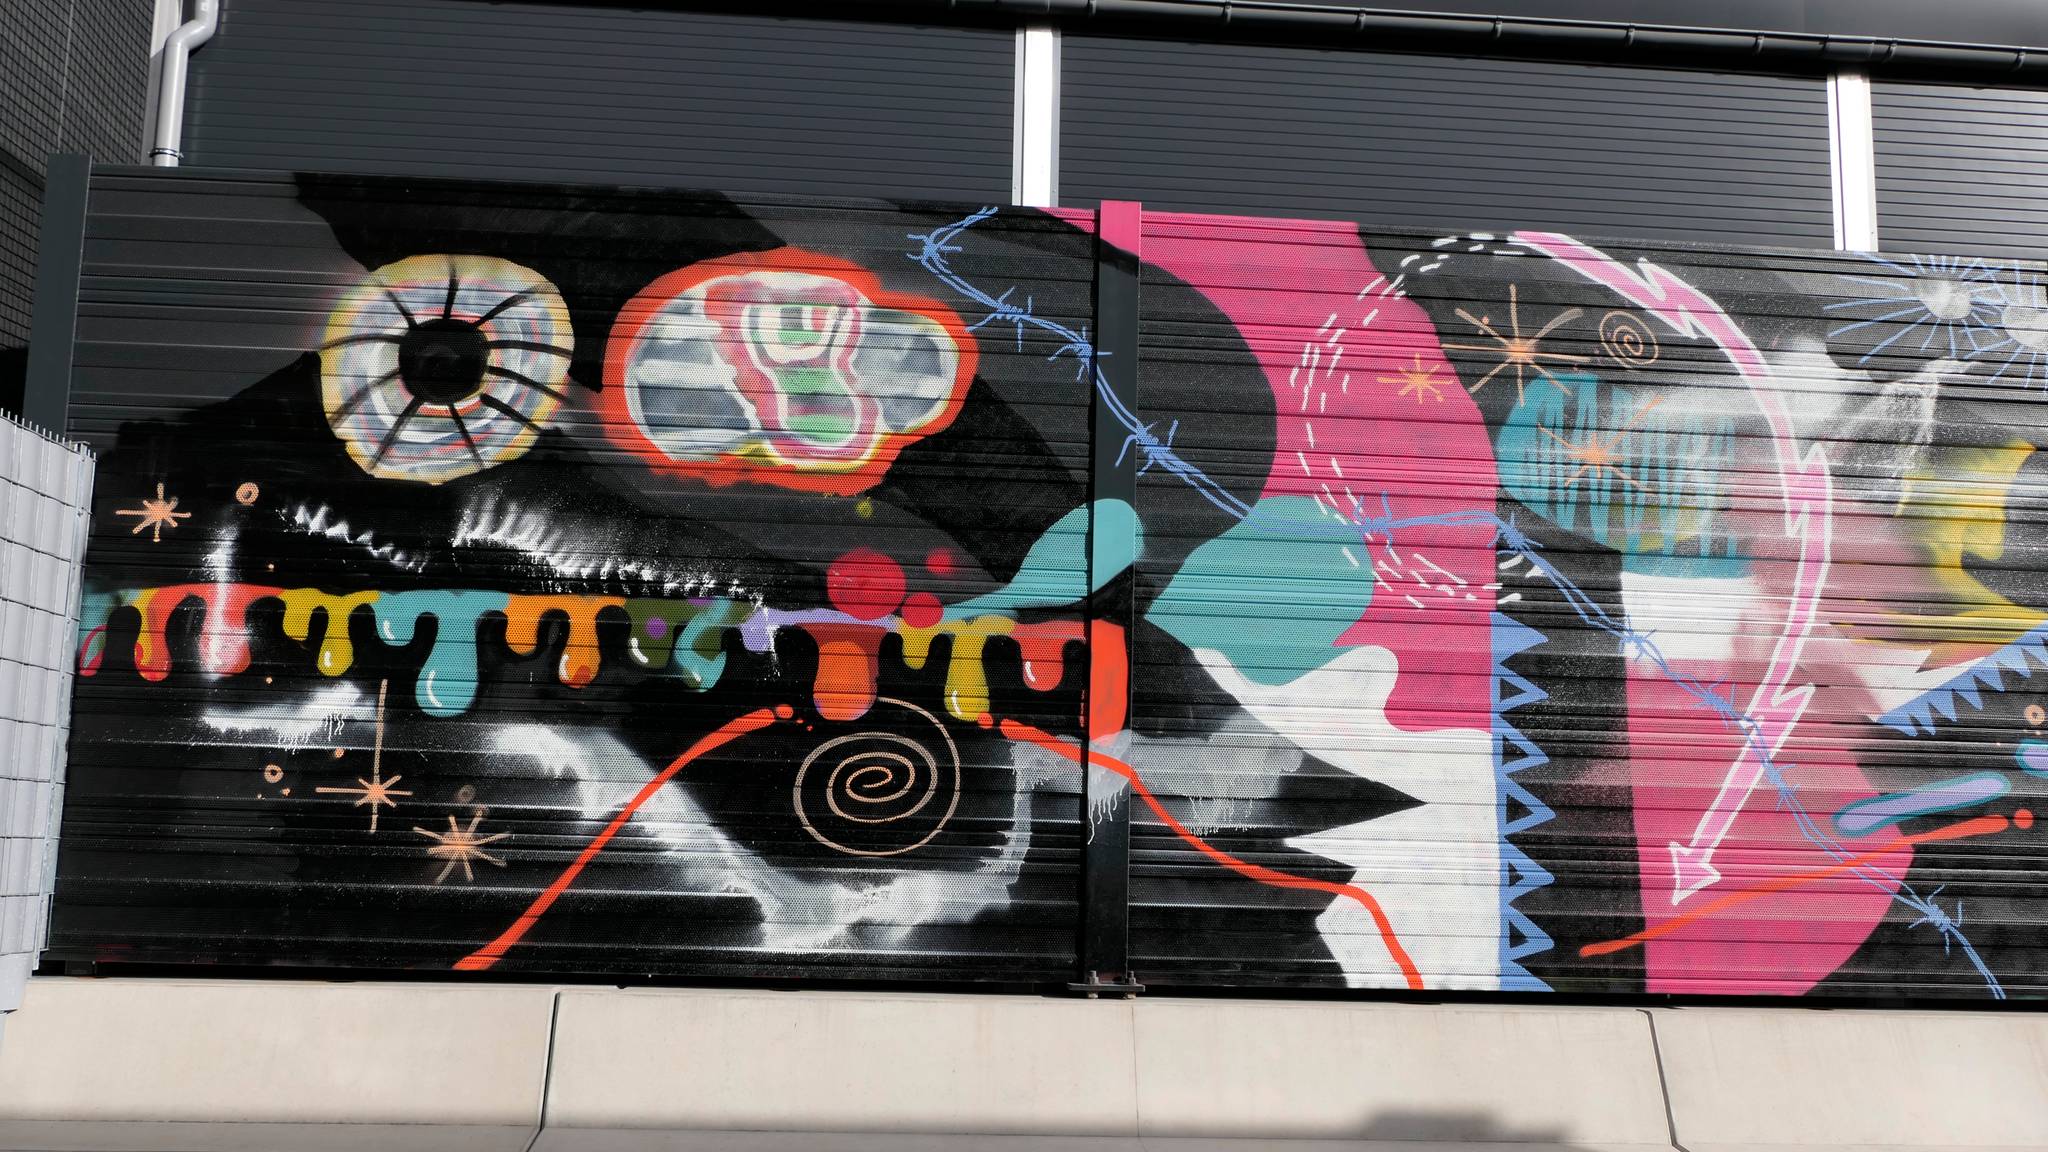 Various Artists&mdash;Abstract graffiti wall